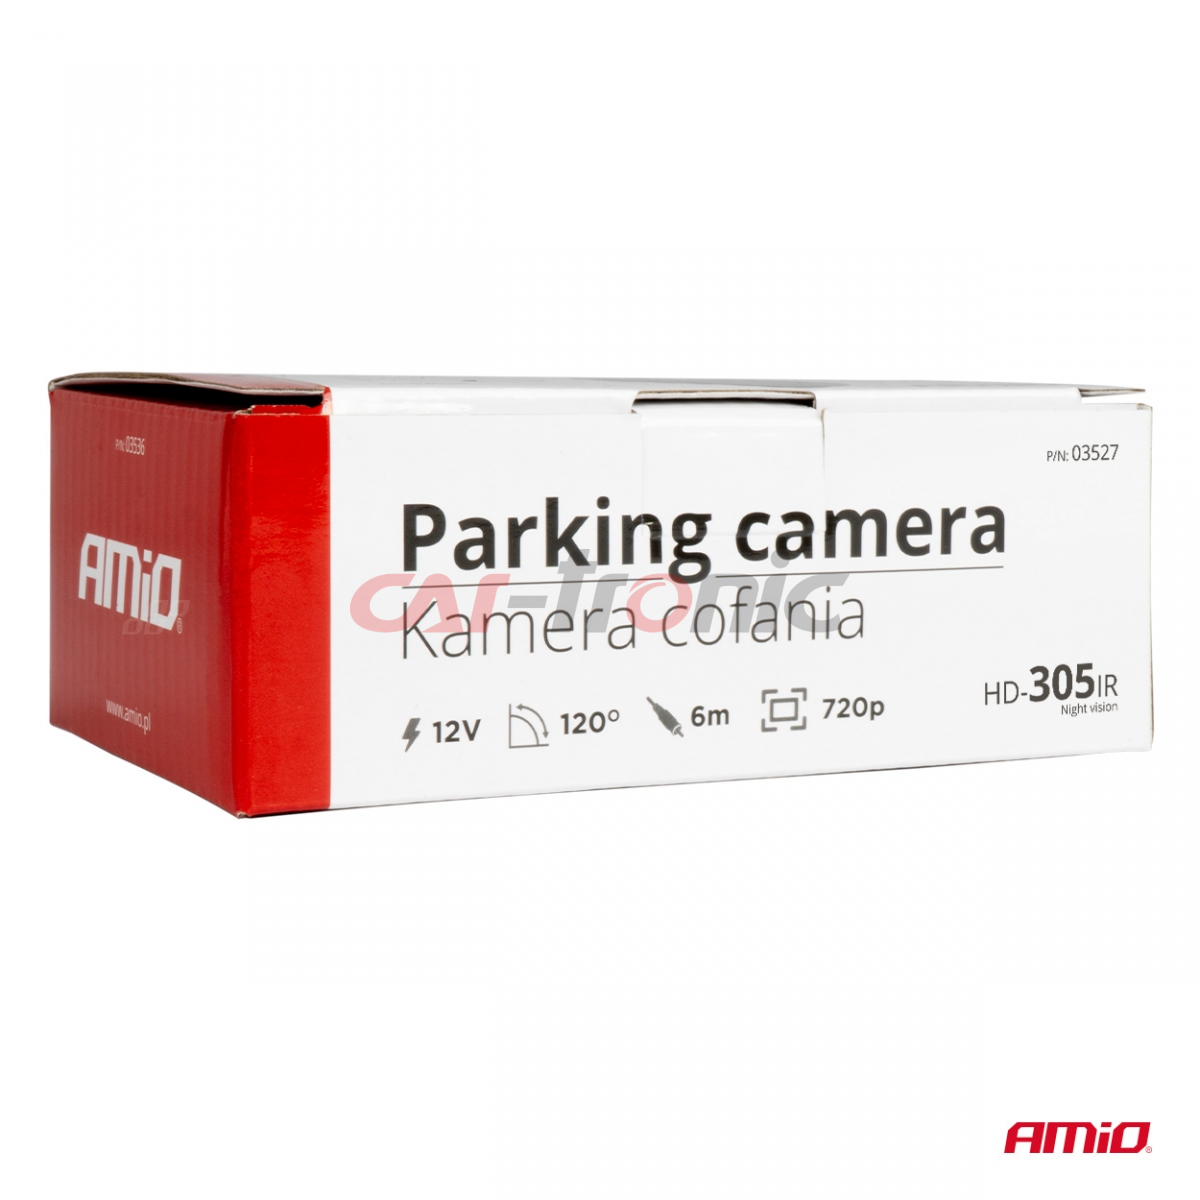 Kamera cofania parkowania HD-305 IR 12v 720p AMIO-03527